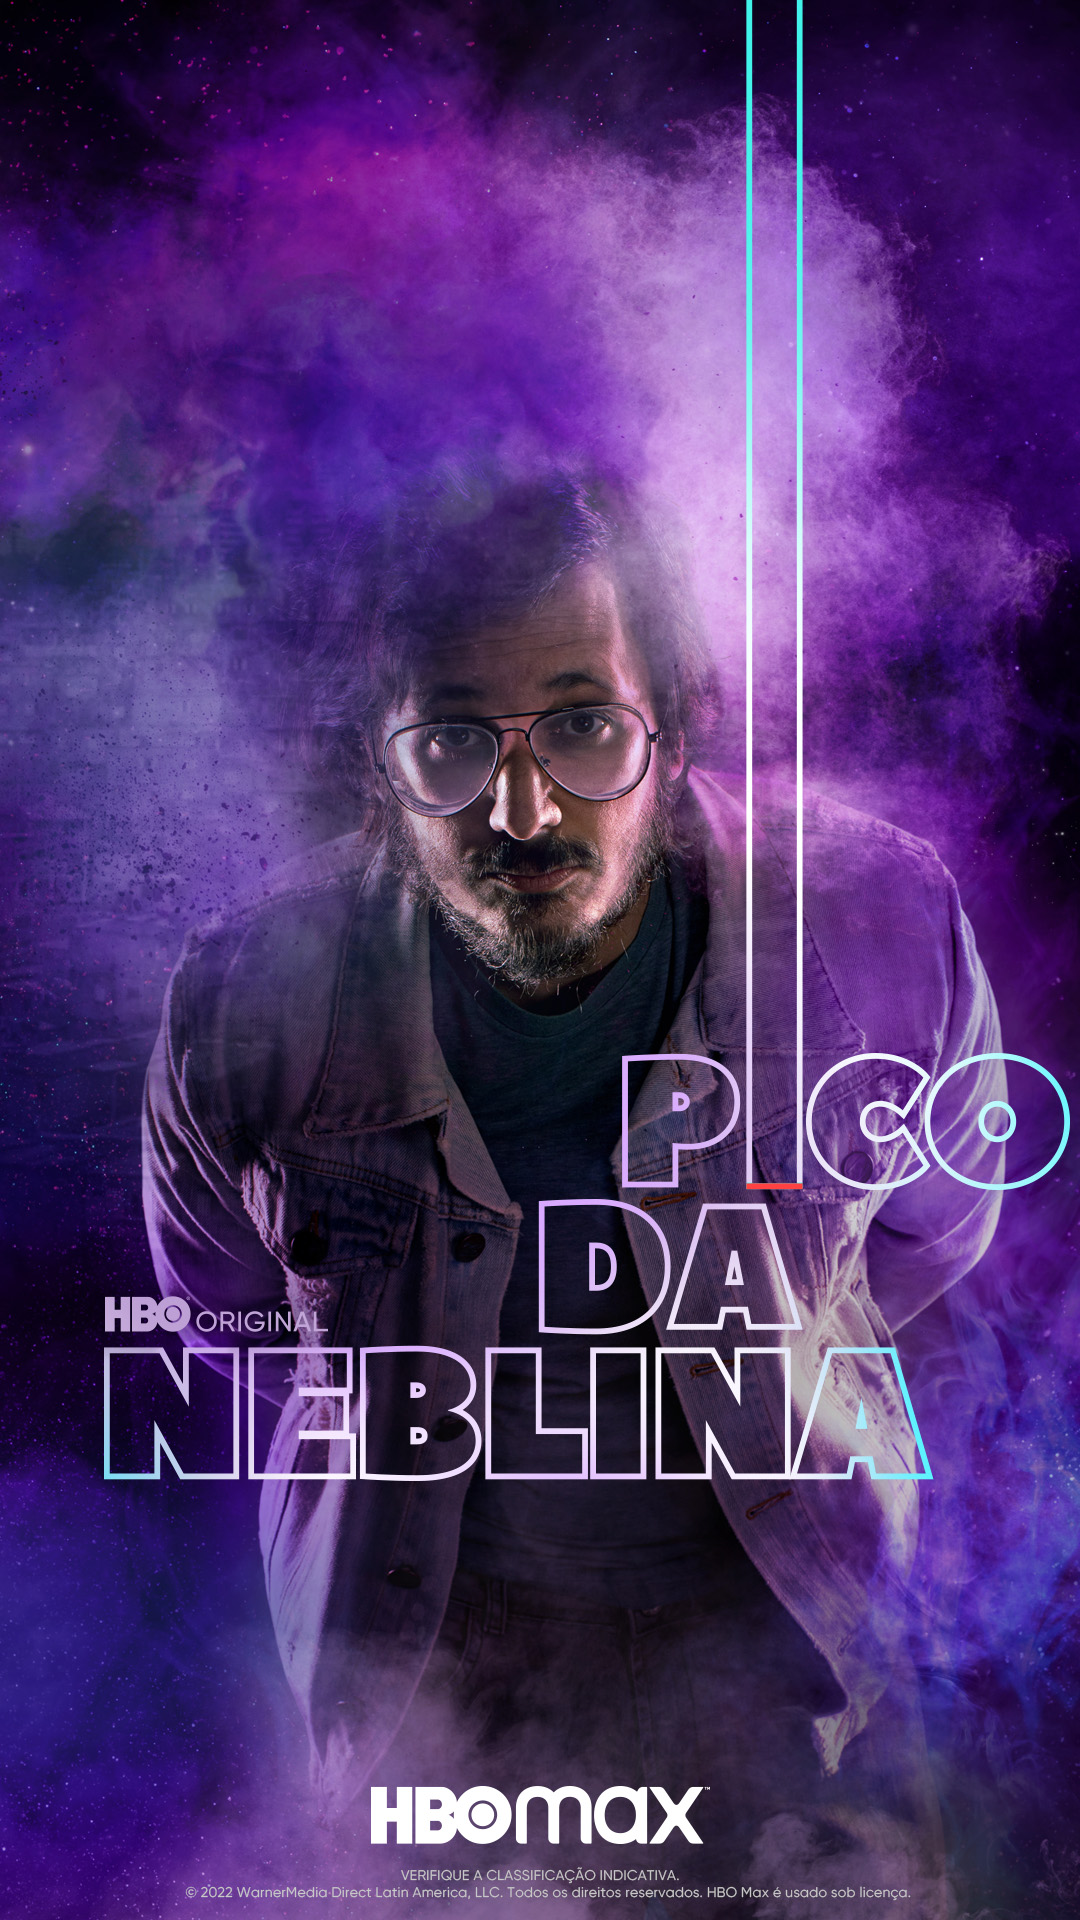 Pico da neblina, série brasileira da HBO, debate a legalização da maconha